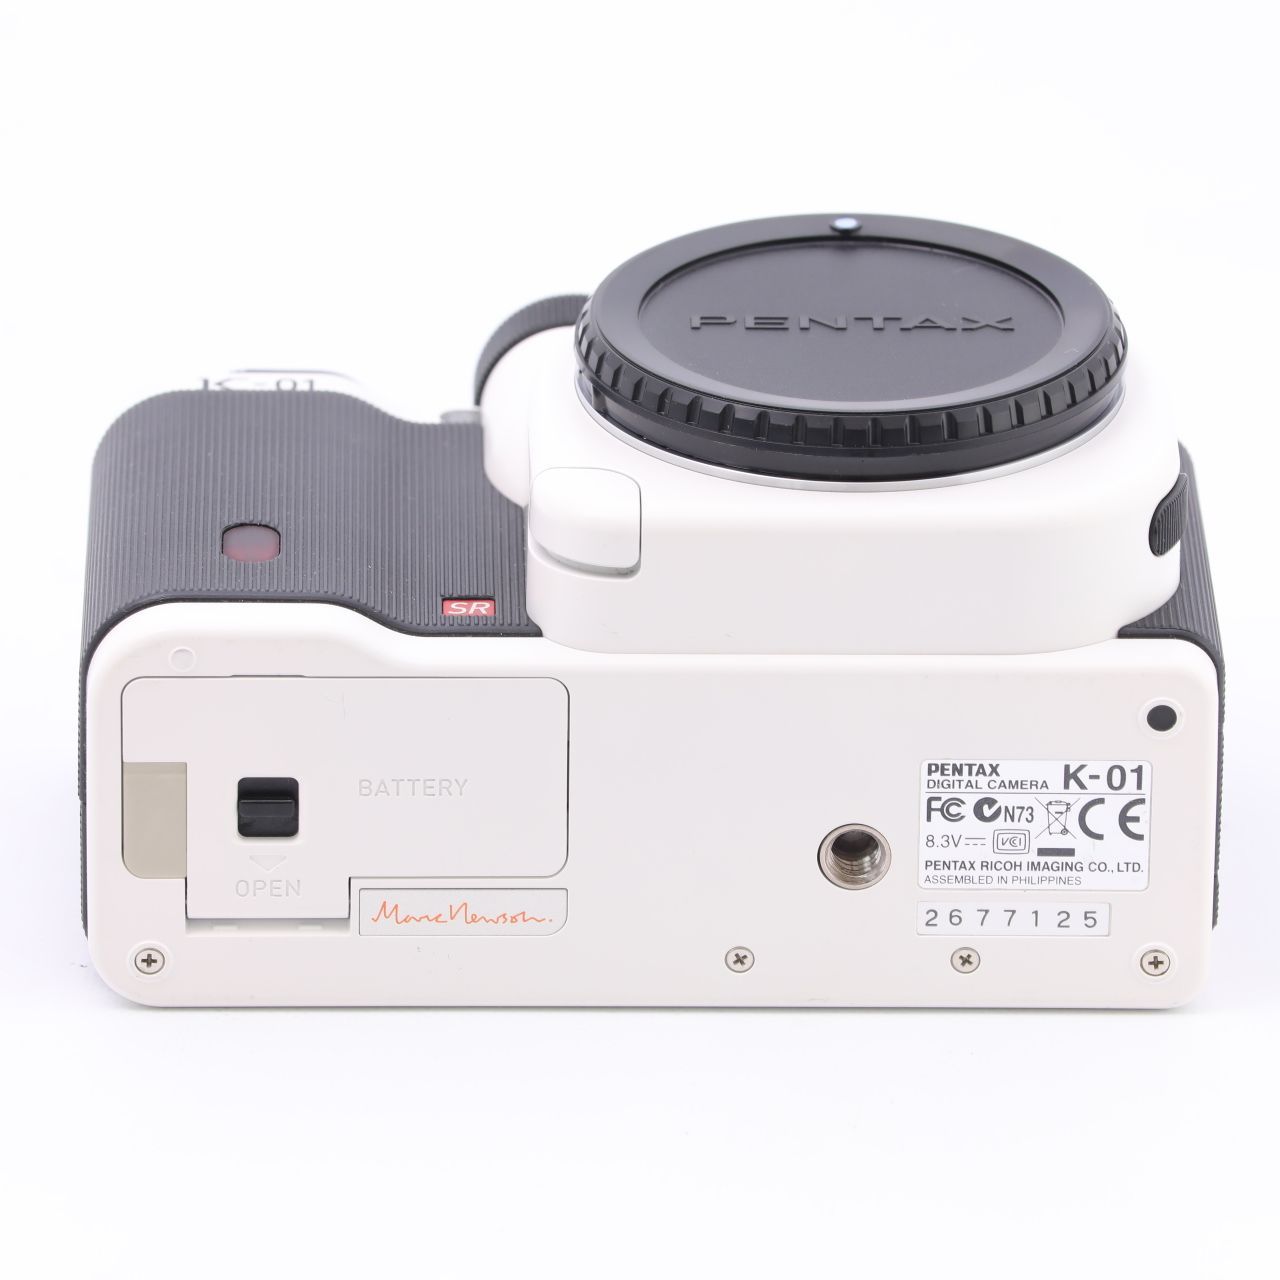 カメラ デジタルカメラ PENTAX K-01 ボディ ホワイト/ブラック | www.myglobaltax.com